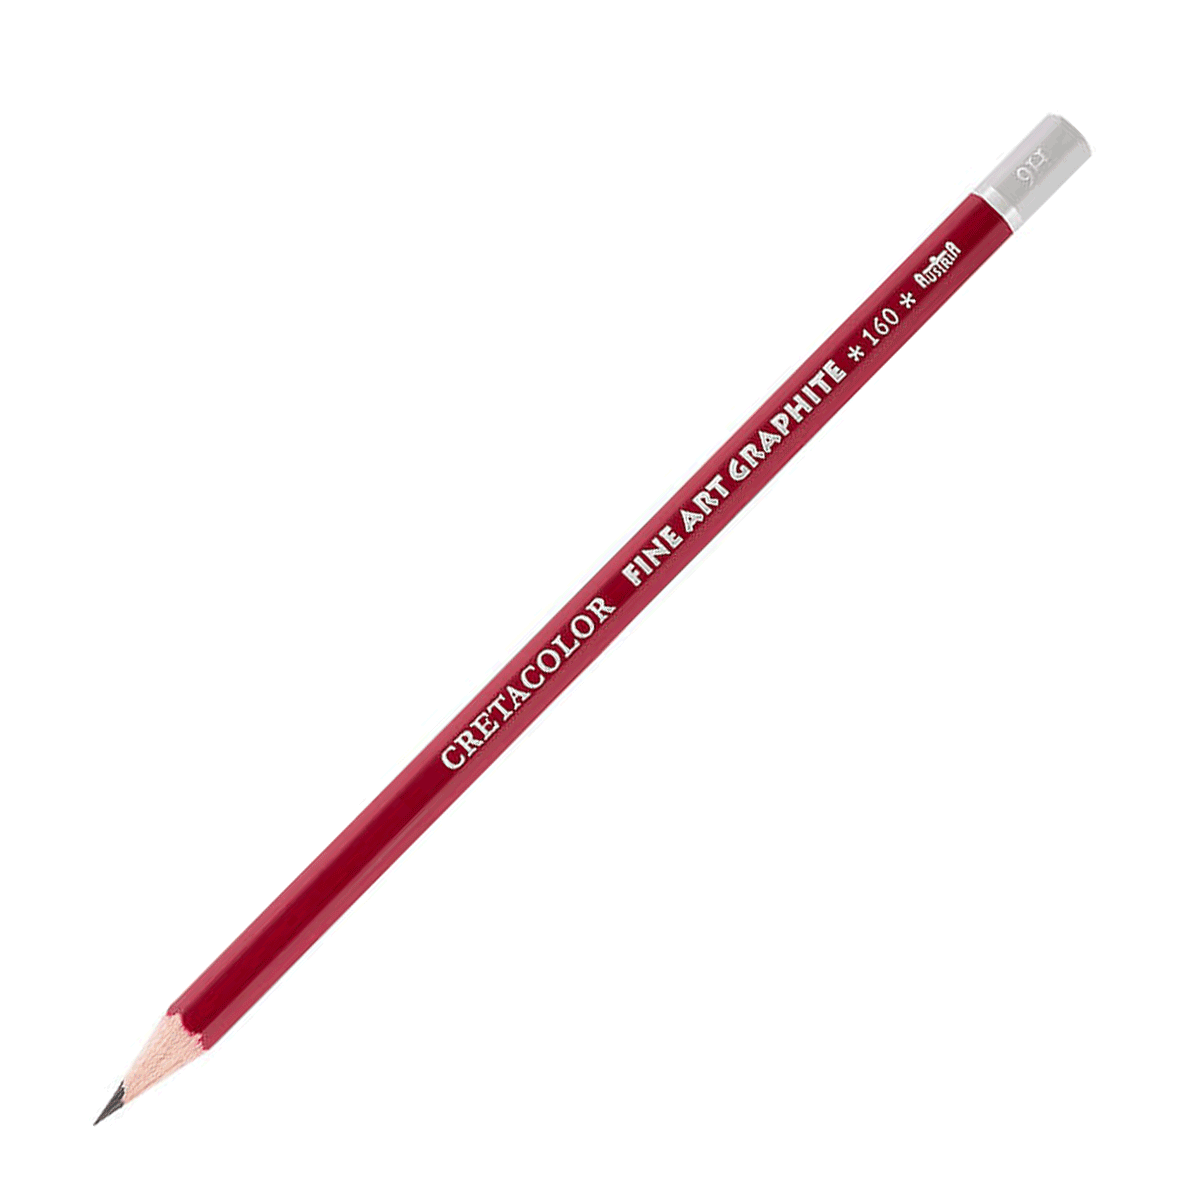 Cretacolor Fine Art Red Graphite Pencil - 9H